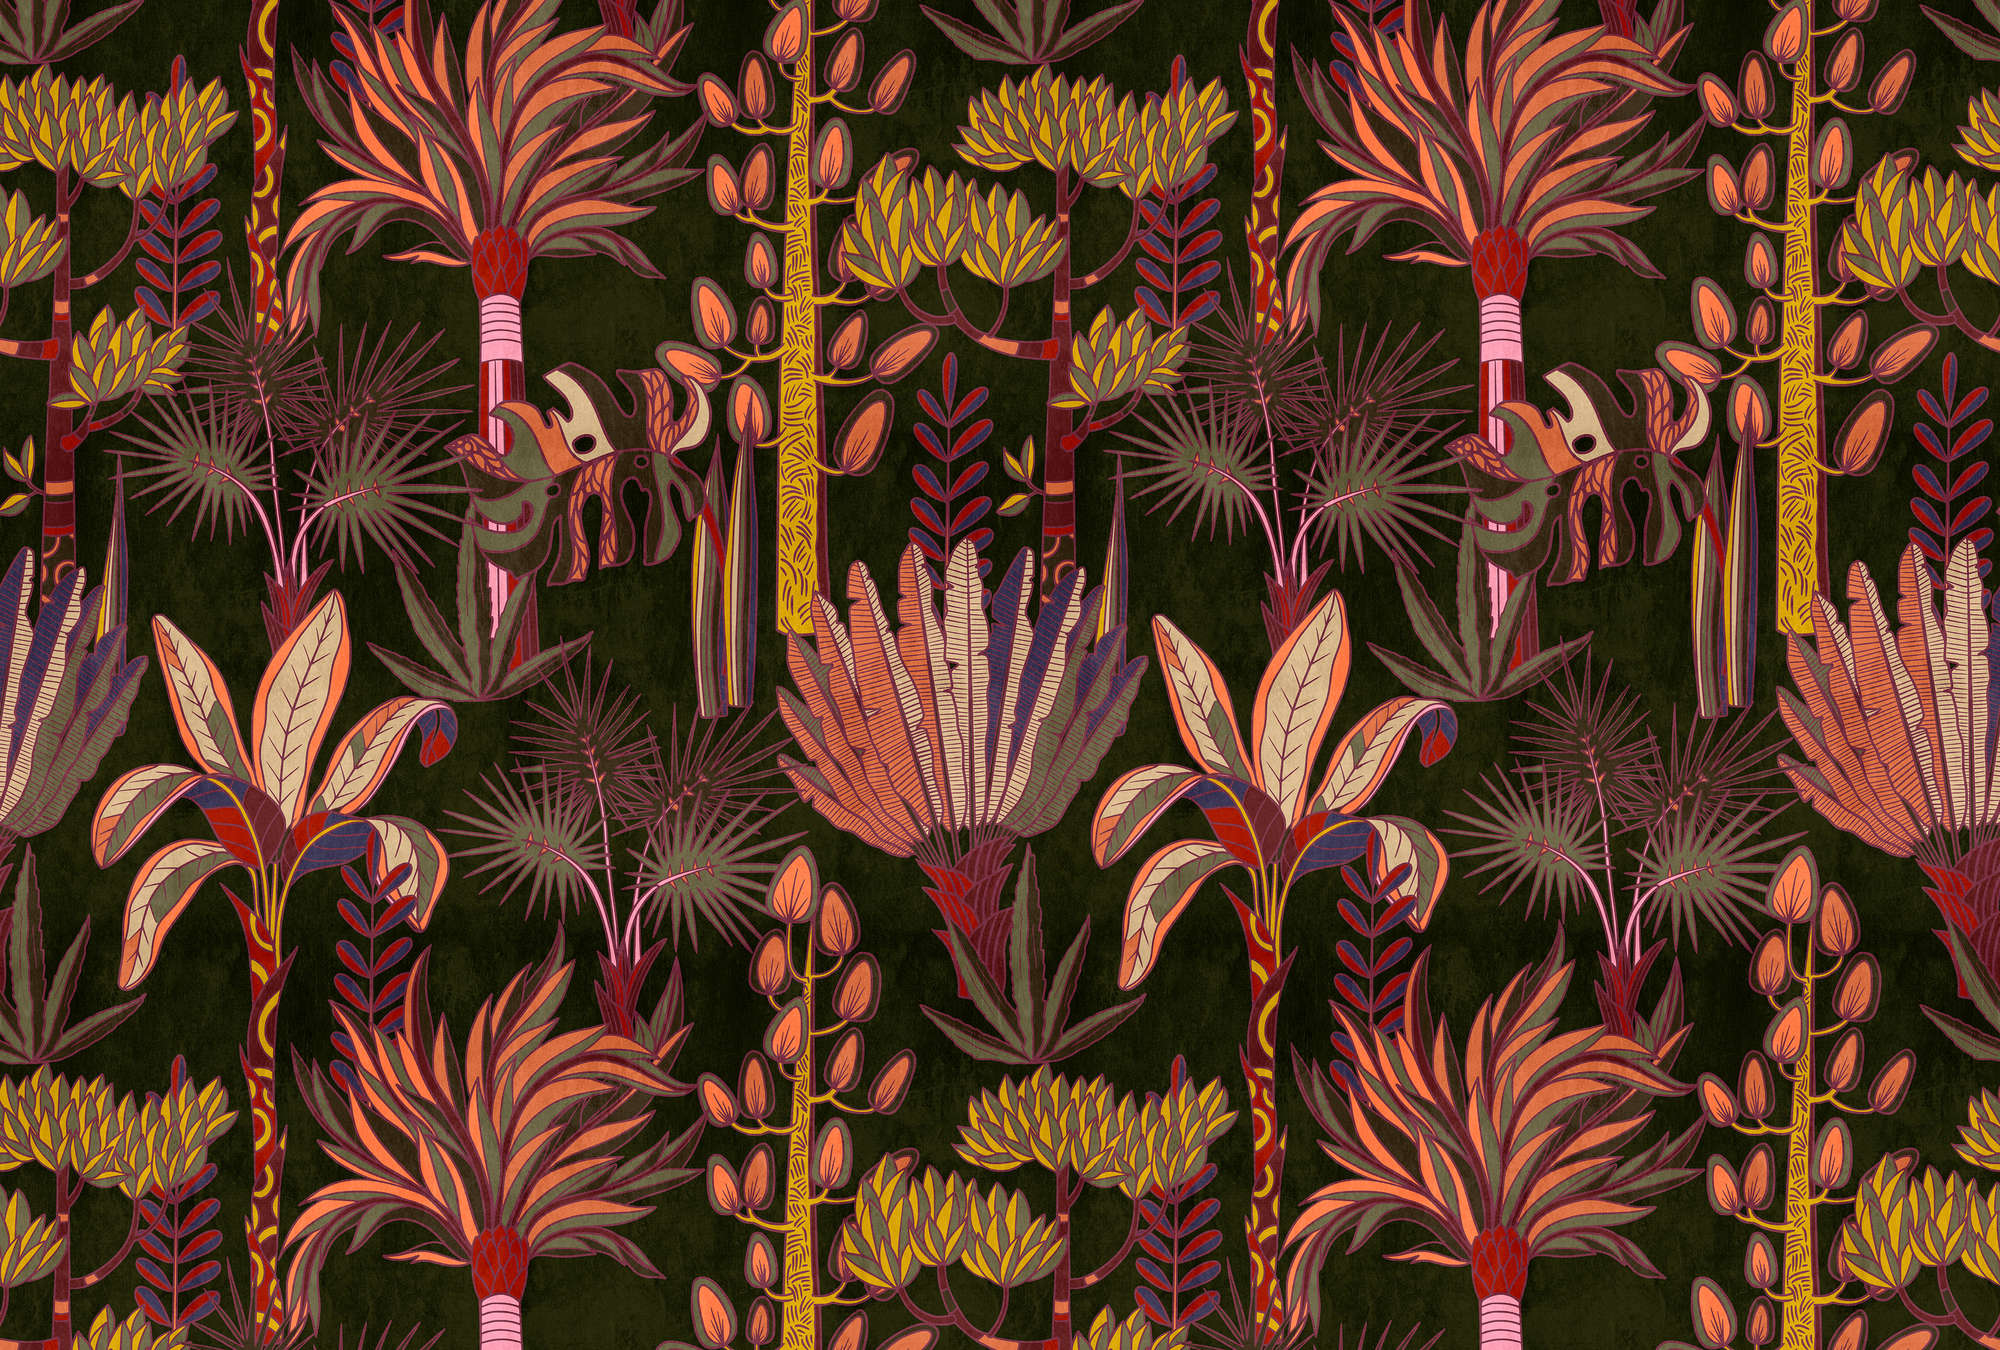             Lagos 1 - mural de palmeras de estilo gráfico y colorido con aspecto textil
        